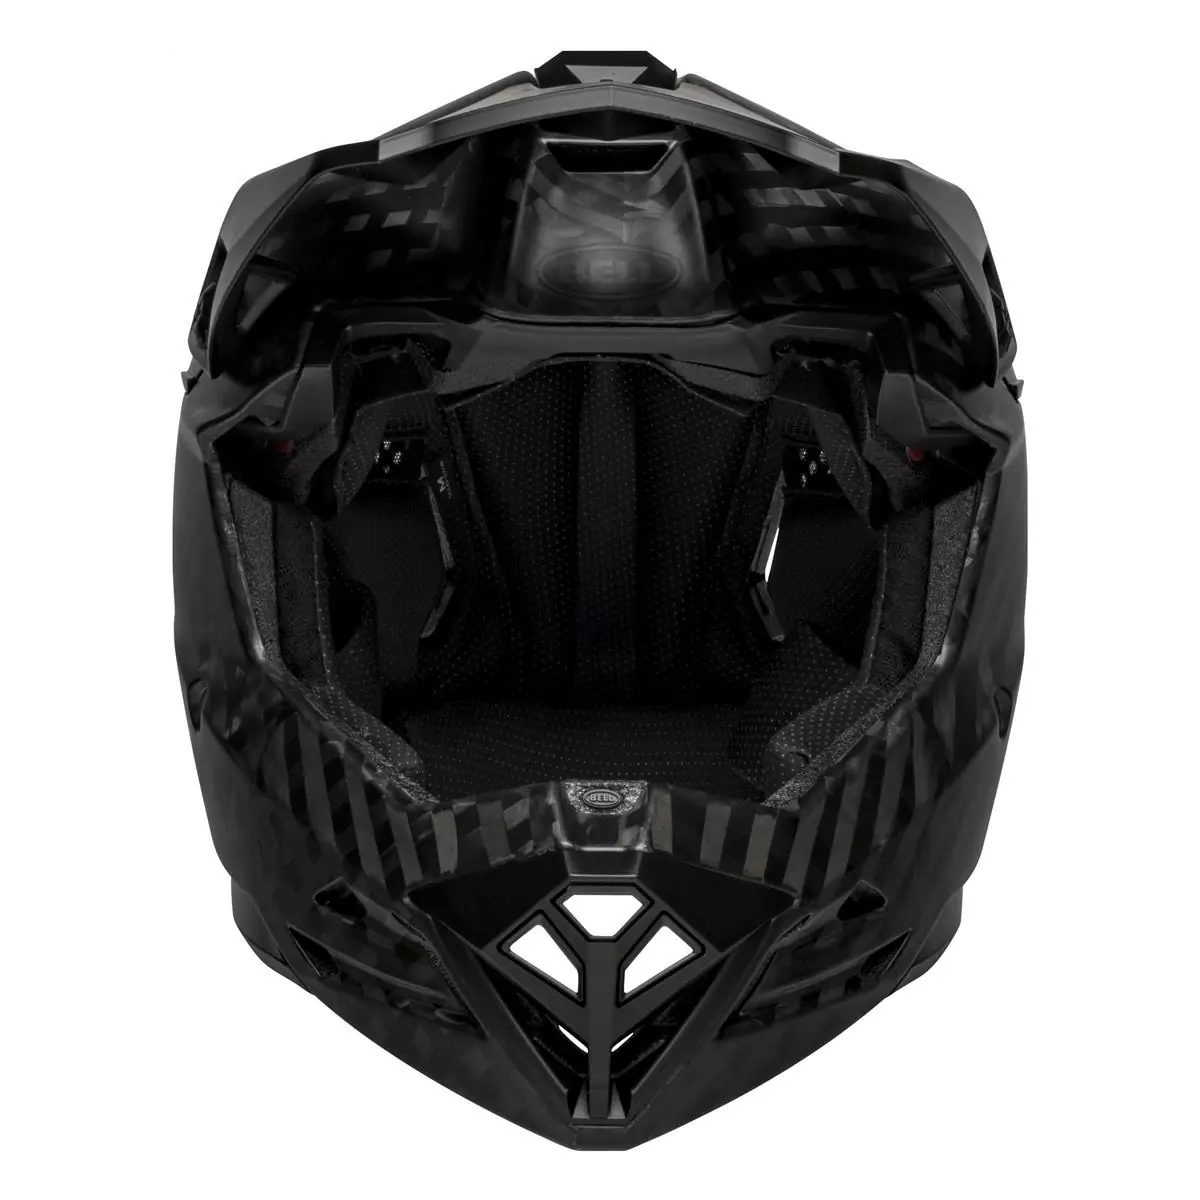 Full-10 Spherical Matte Black Carbon Full Face Helmet Size XS/S (51-55cm) #2